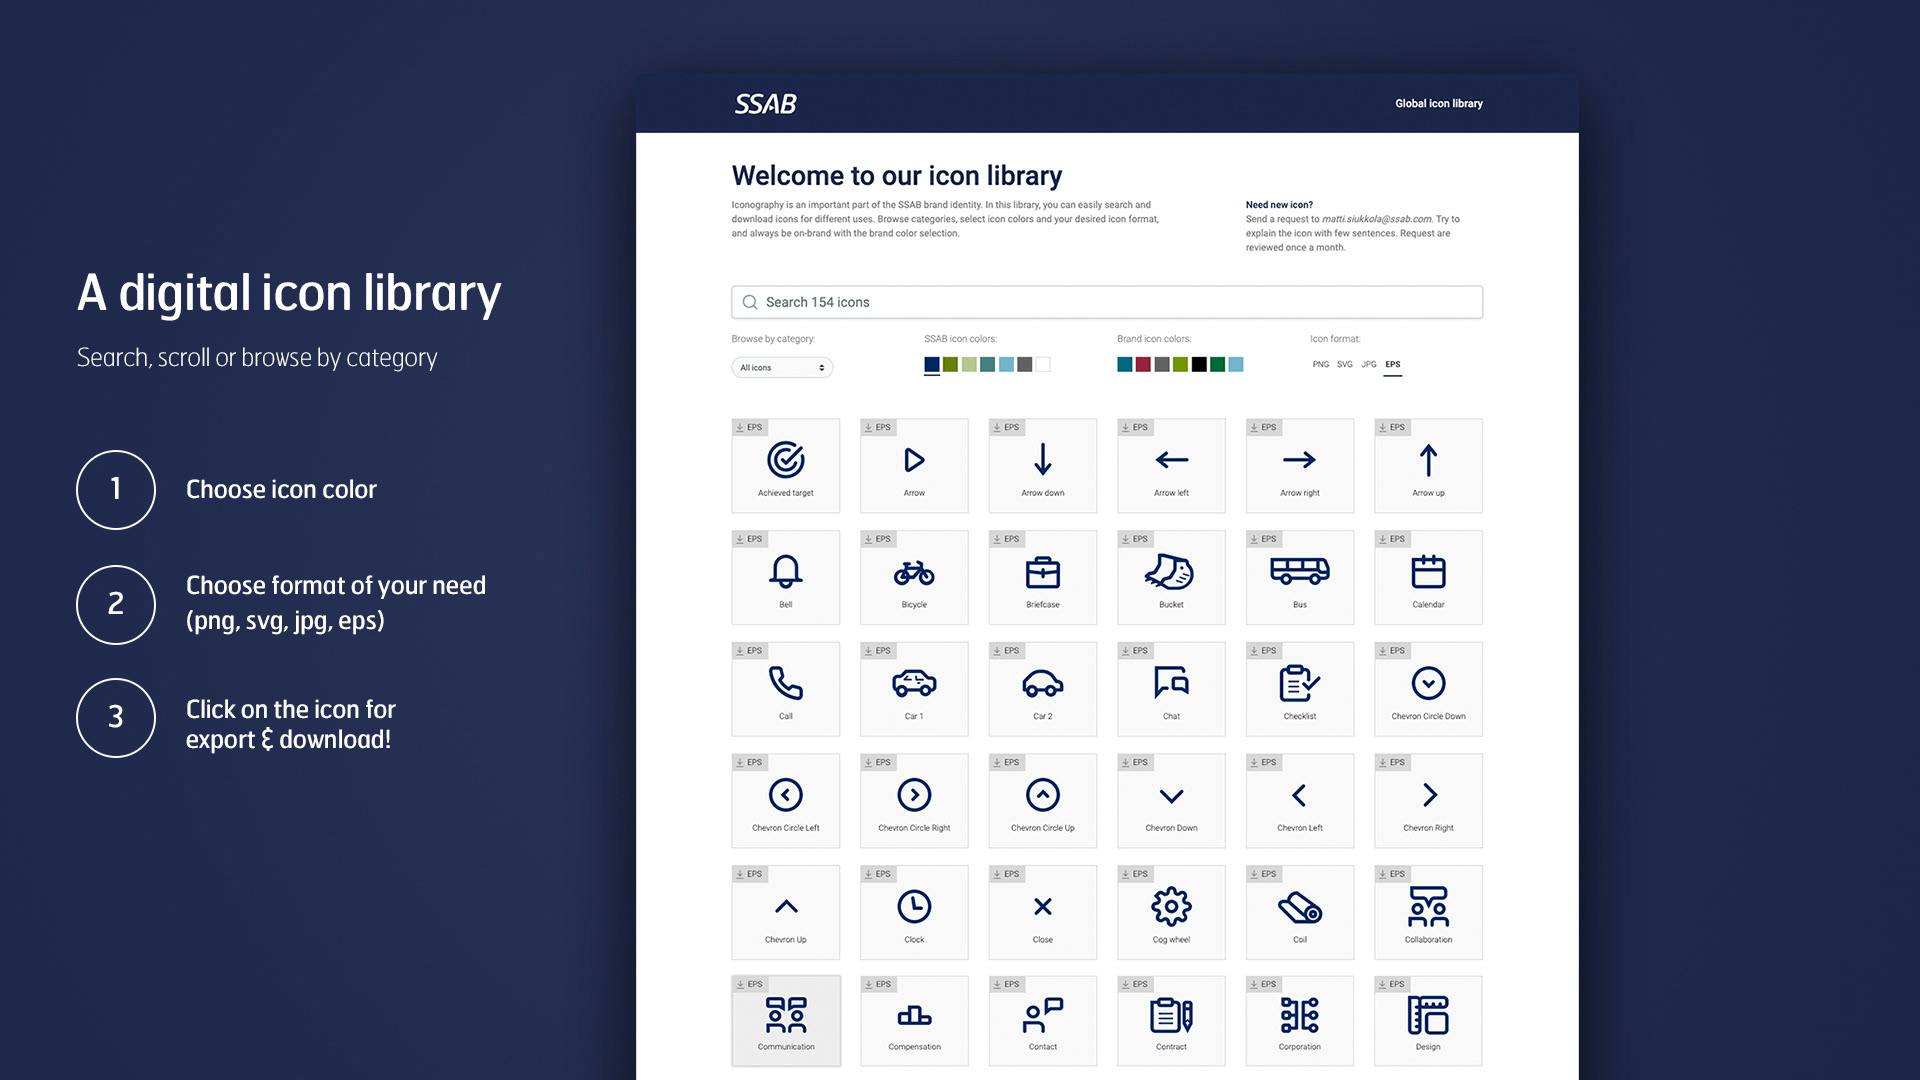 SSABs nya ikonbibliotek framtaget av Consid Communication